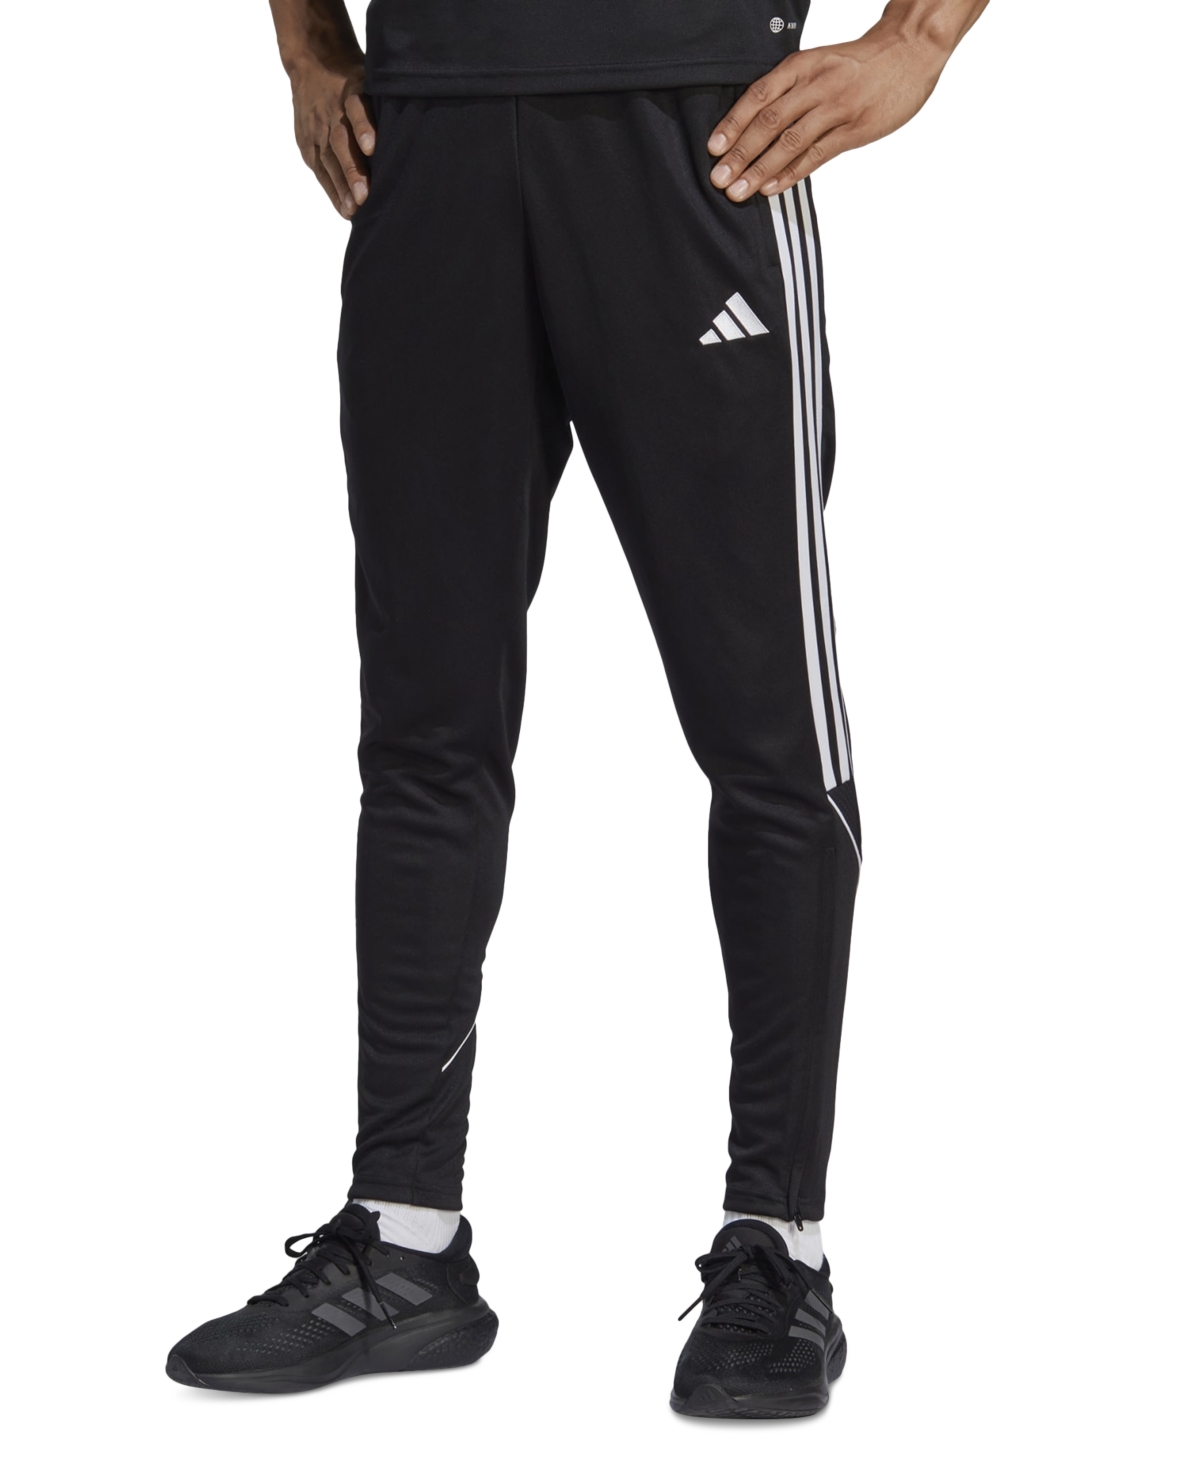 Adidas Originals Men's Tiro 23 League Pants In Black,black